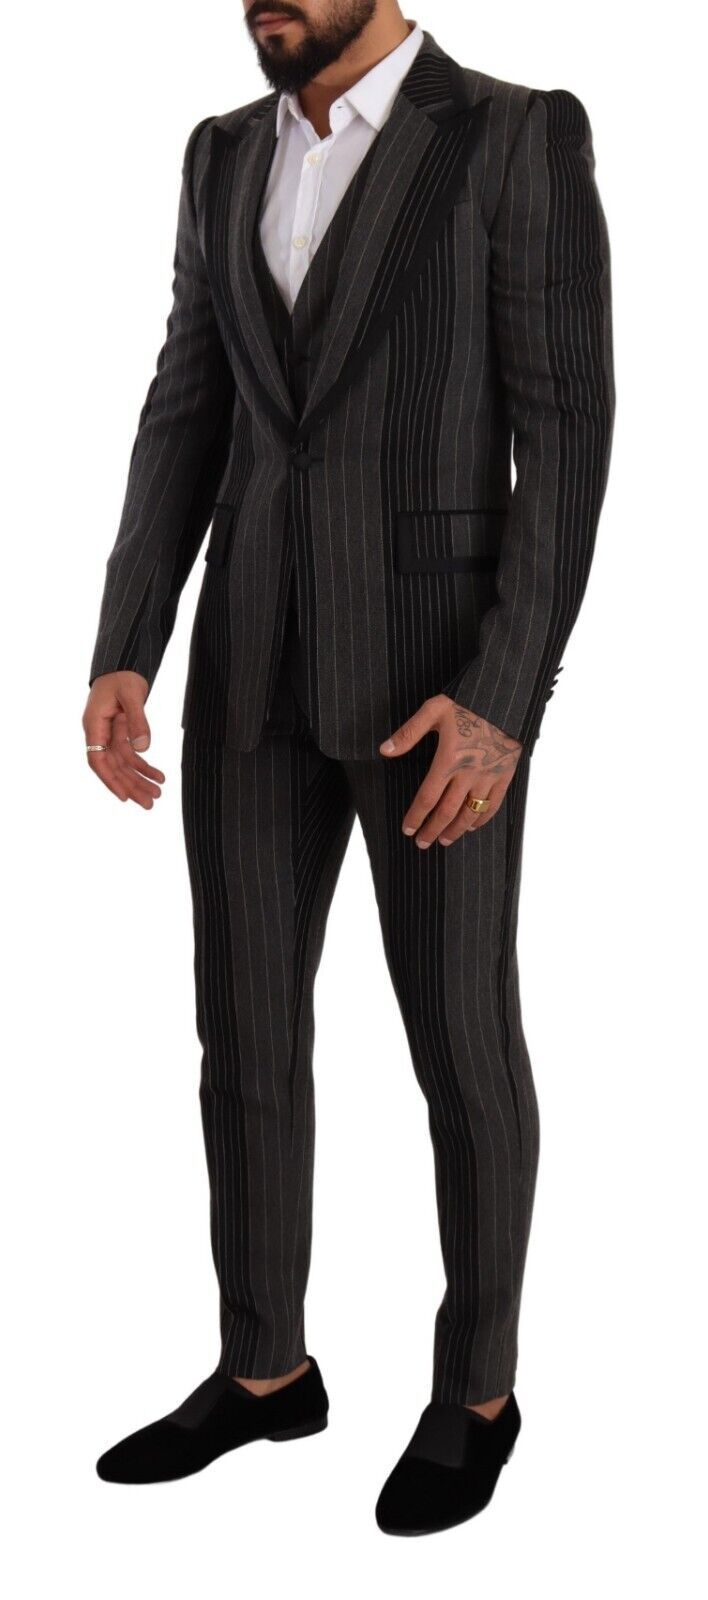 Elegant Striped Three-Piece Suit